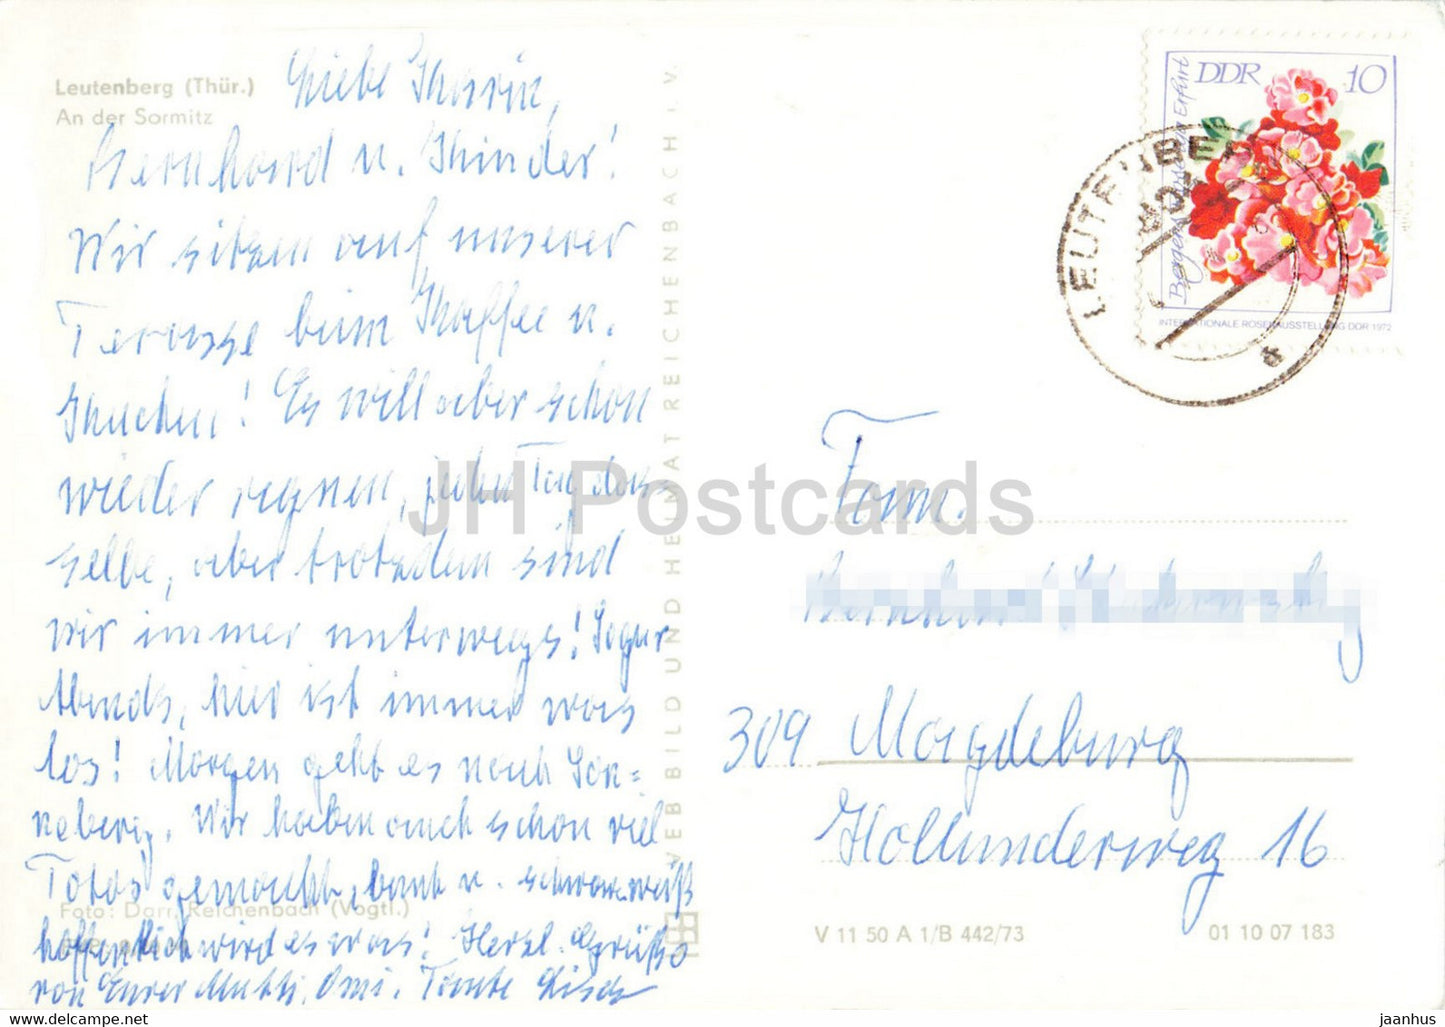 Leutenberg - An der Sormitz - Thur - carte postale ancienne - 1974 - Allemagne DDR - utilisé